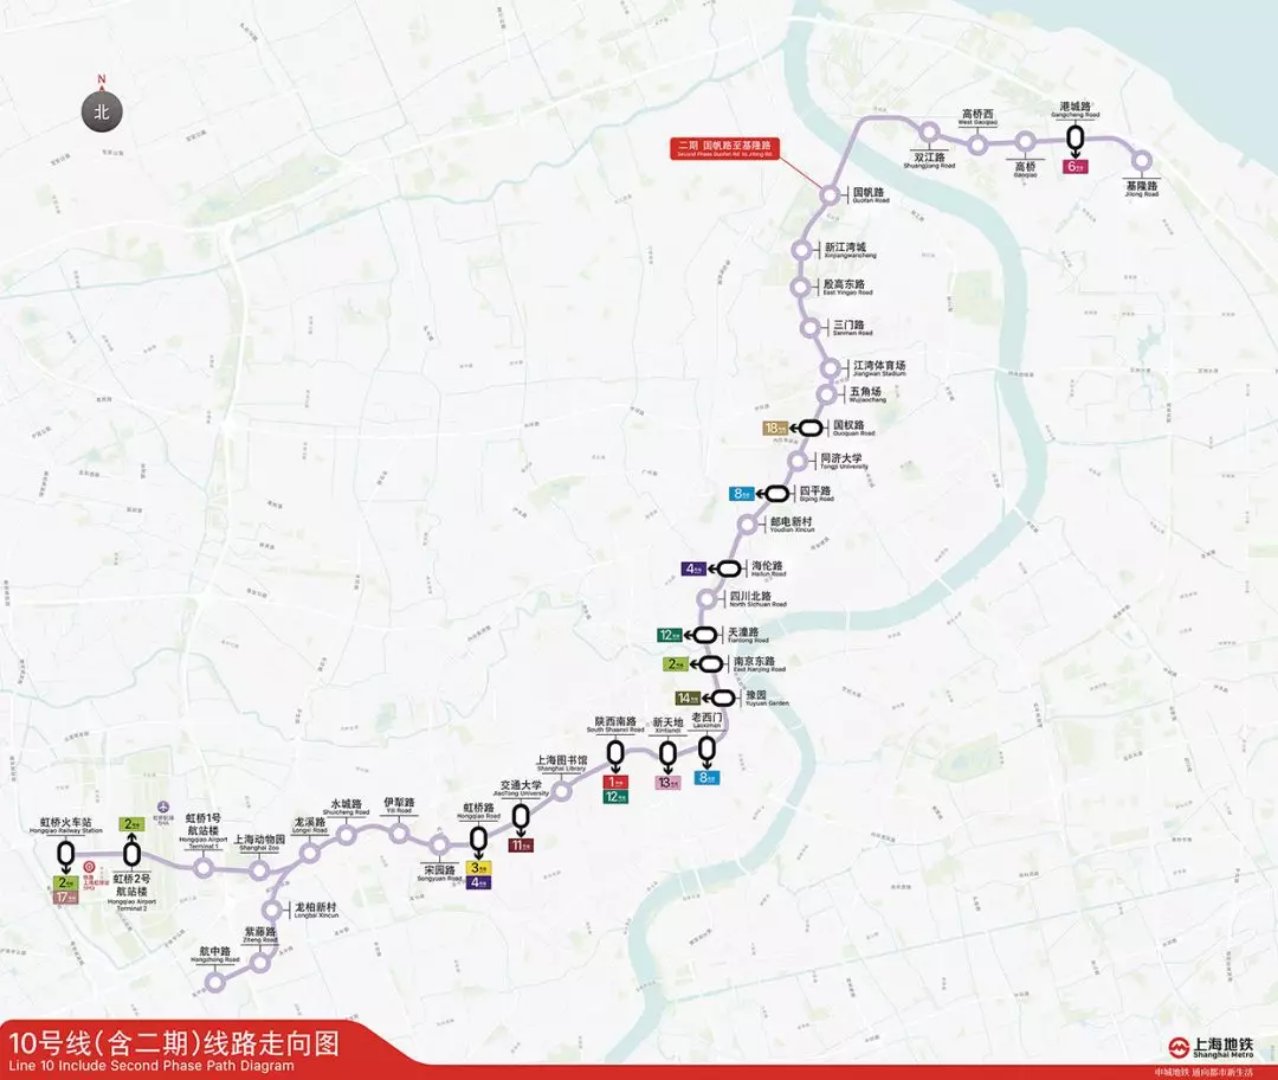 下面是上海地铁10号线东延伸的地图,两个红框的地方就是它的起点和